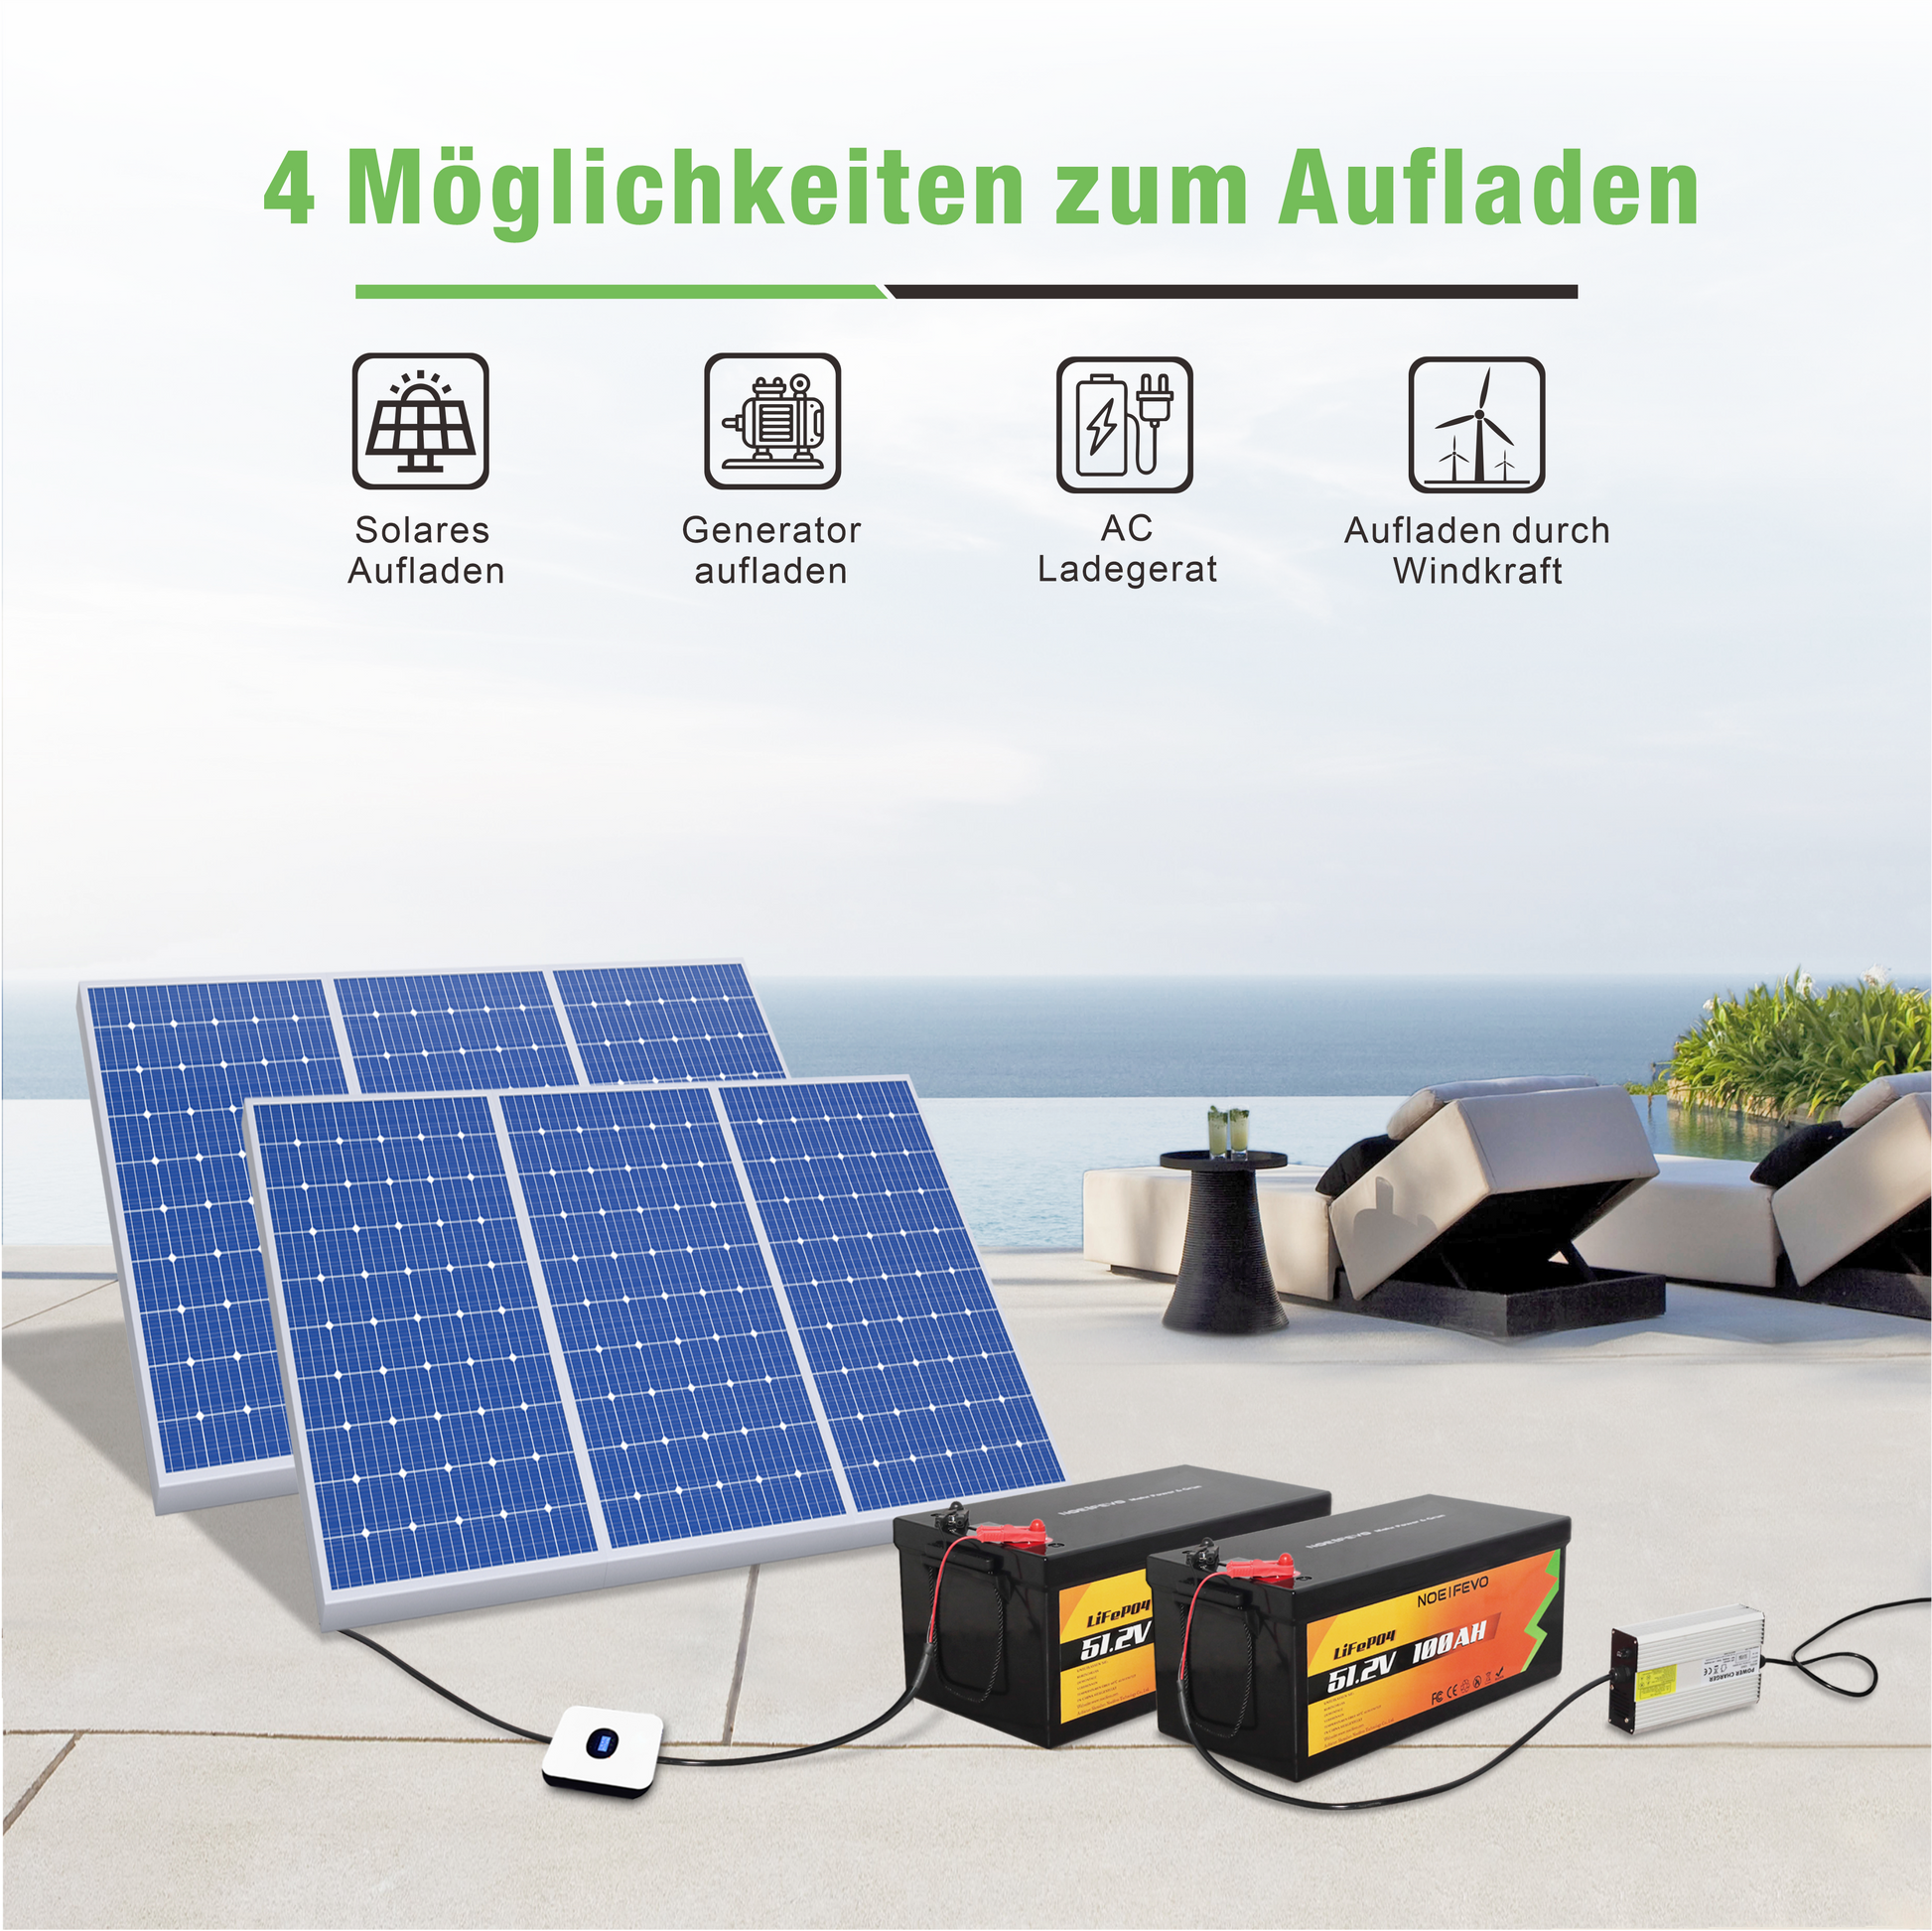 NOEIFEVO D48100 51.2V 100AH Lithium Iron Phosphate Battery LiFePO4 Bat –  Smart LifePO4 Batterie & Heimspeicherung von Energie & Intelligentes  Ladegerät